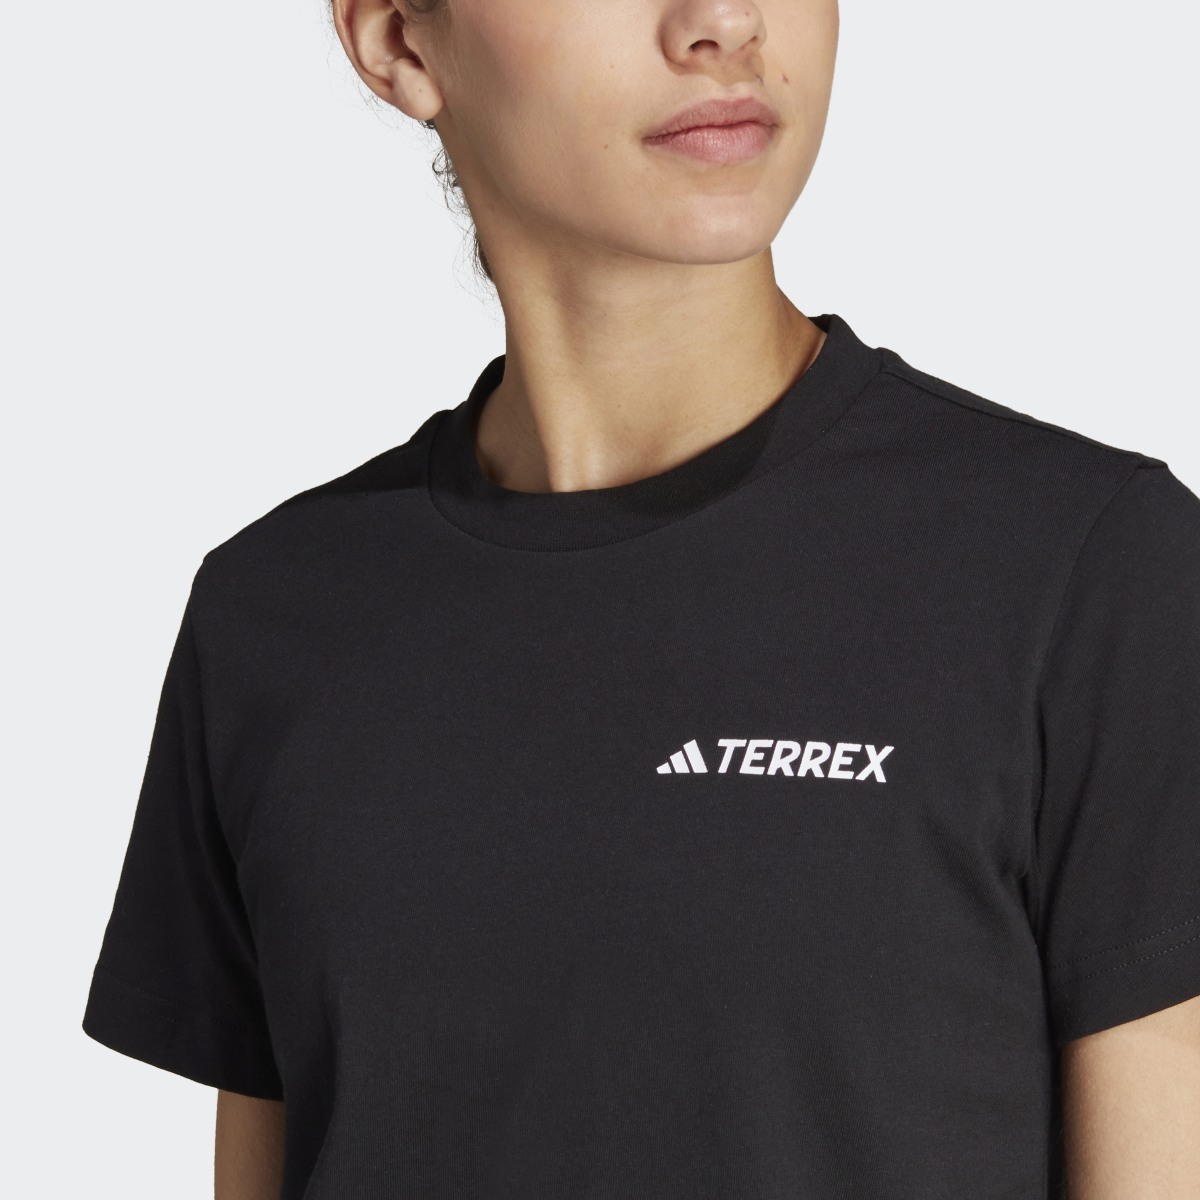 Adidas Camiseta Terrex Graphic Altitude. 6